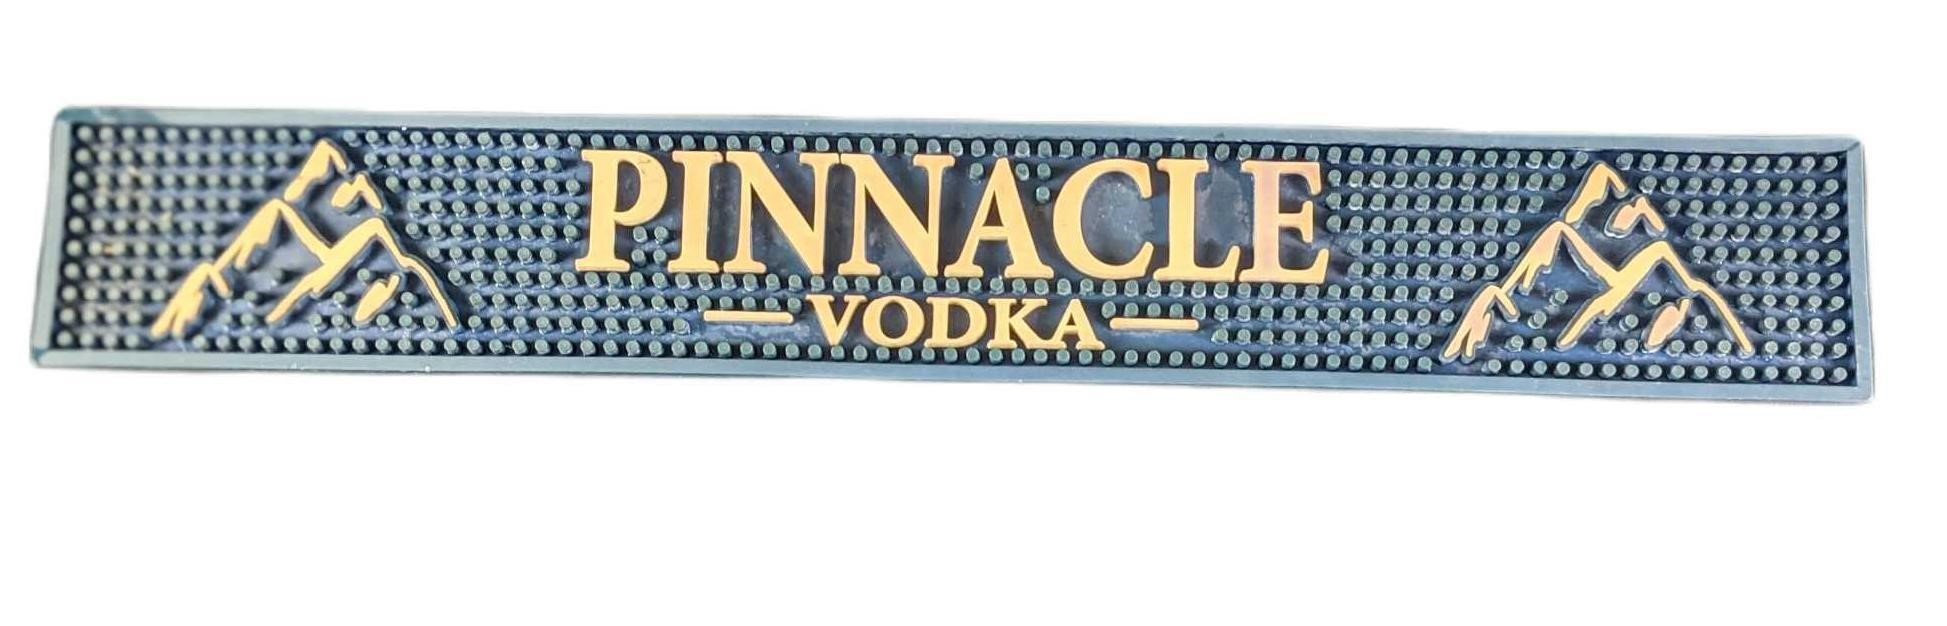 Pinnacle Vodka Rubber Bar Spill Mat Mancave